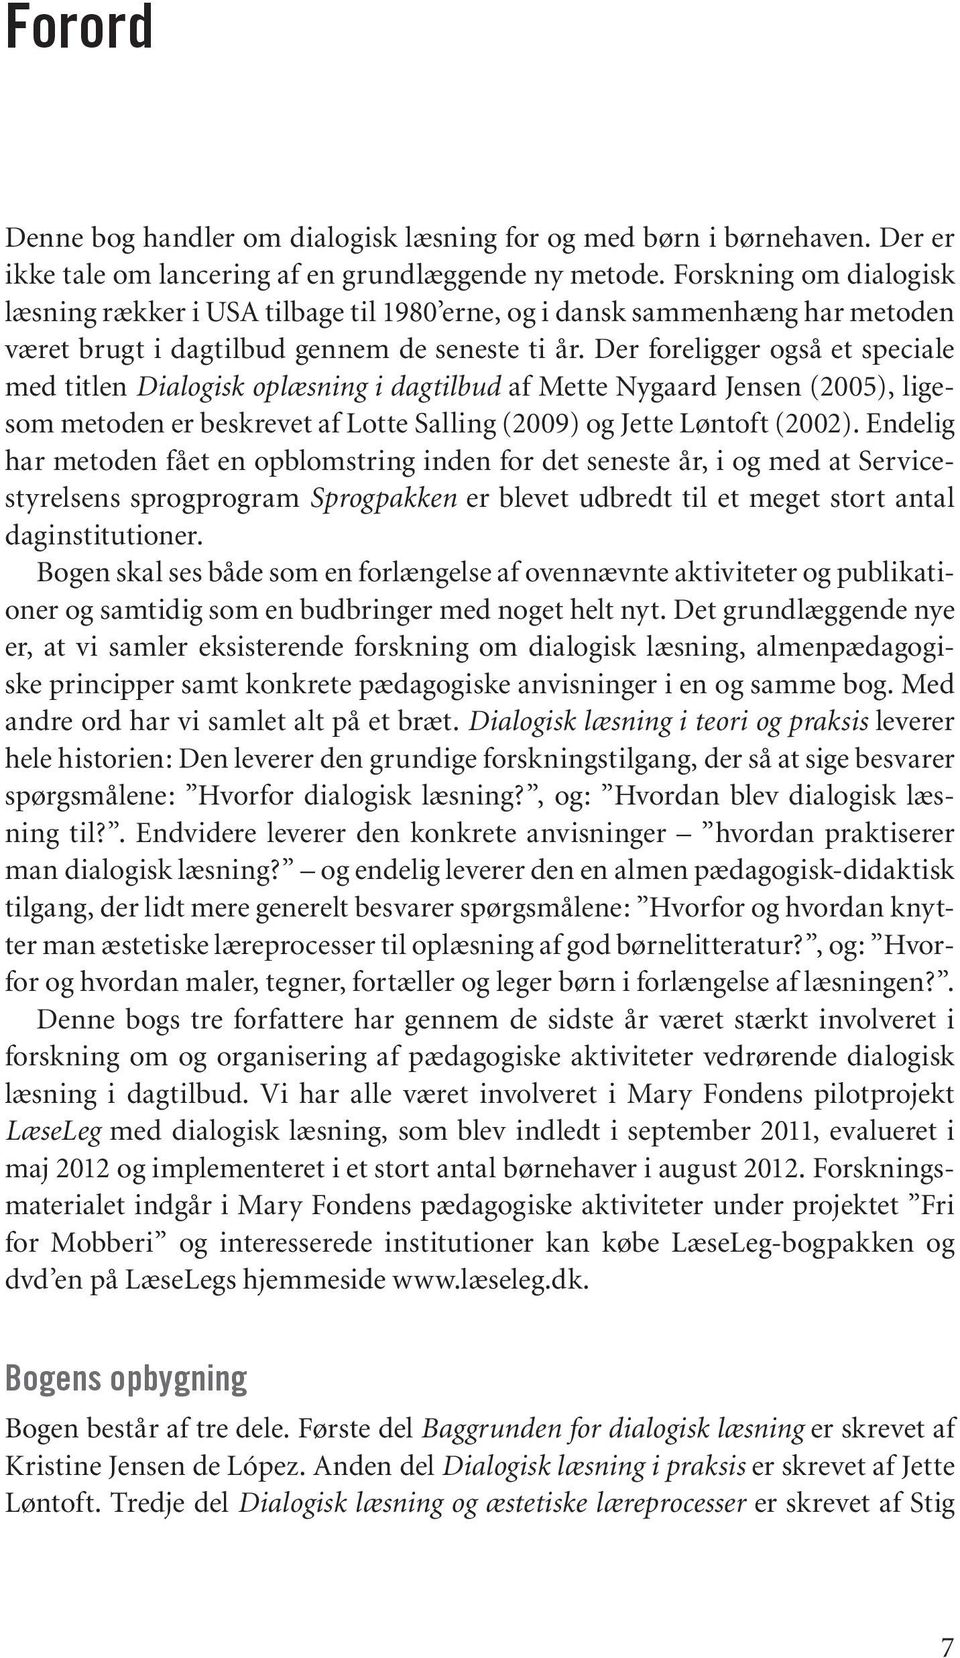 Stig Broström Kristine Jensen de López Jette Løntoft. Dialogisk læsning i  teori og praksis - PDF Free Download